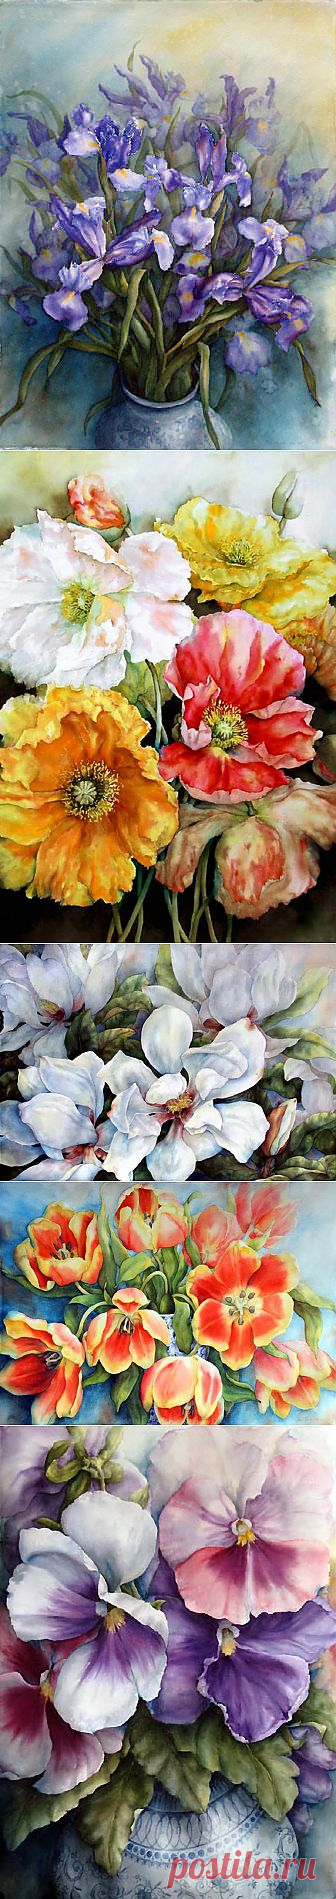 Акварели от Пэм Саквилл (Pam Sackville) - художника из Сиднея | Цветут цветы для красоты, Для мыслей, чистых и прекрасных....